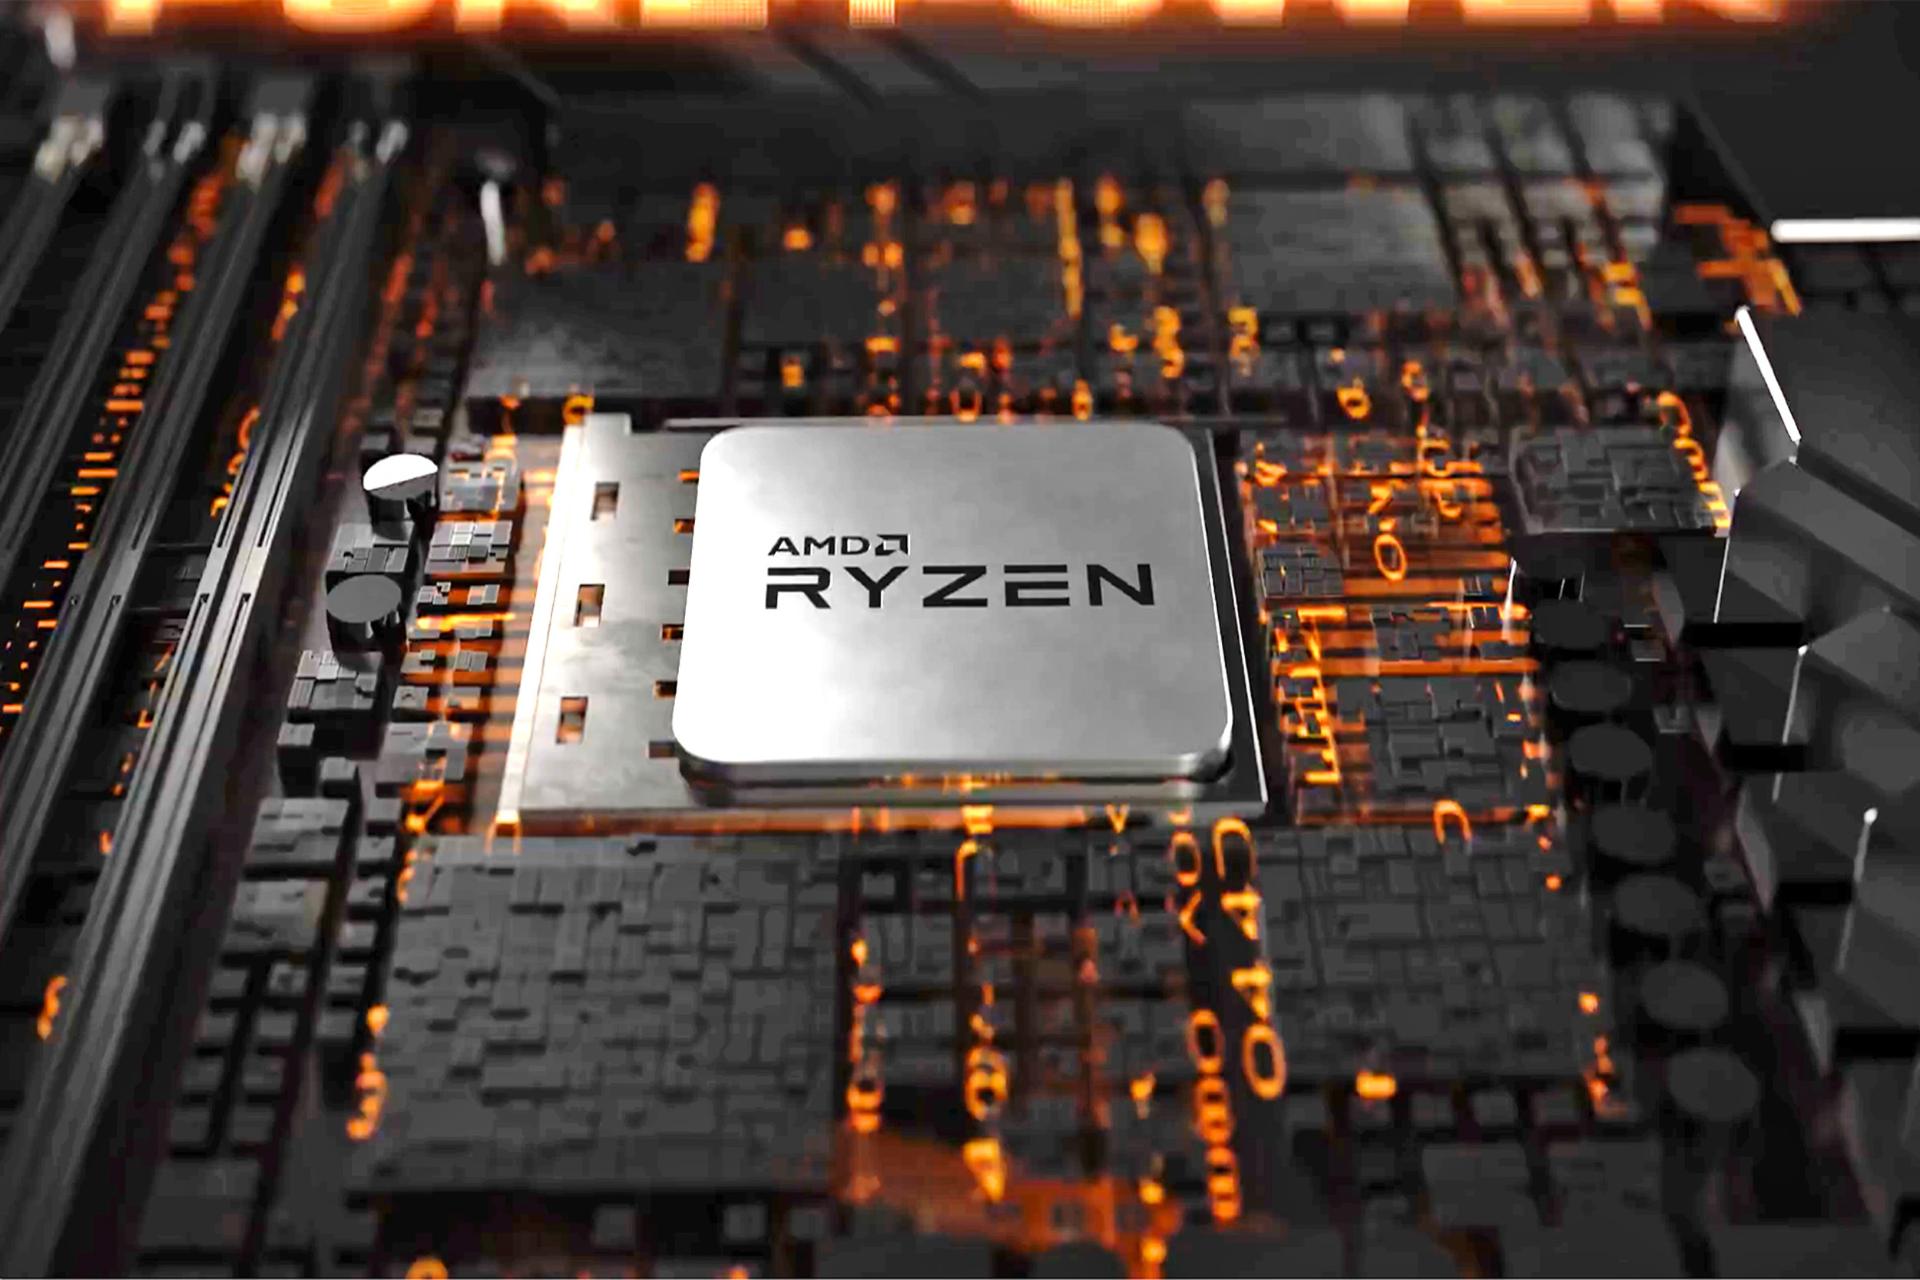 پردازنده رایزن ای ام دی / AMD Ryzen روی مادربرد با قطعات رنگ نارنجی